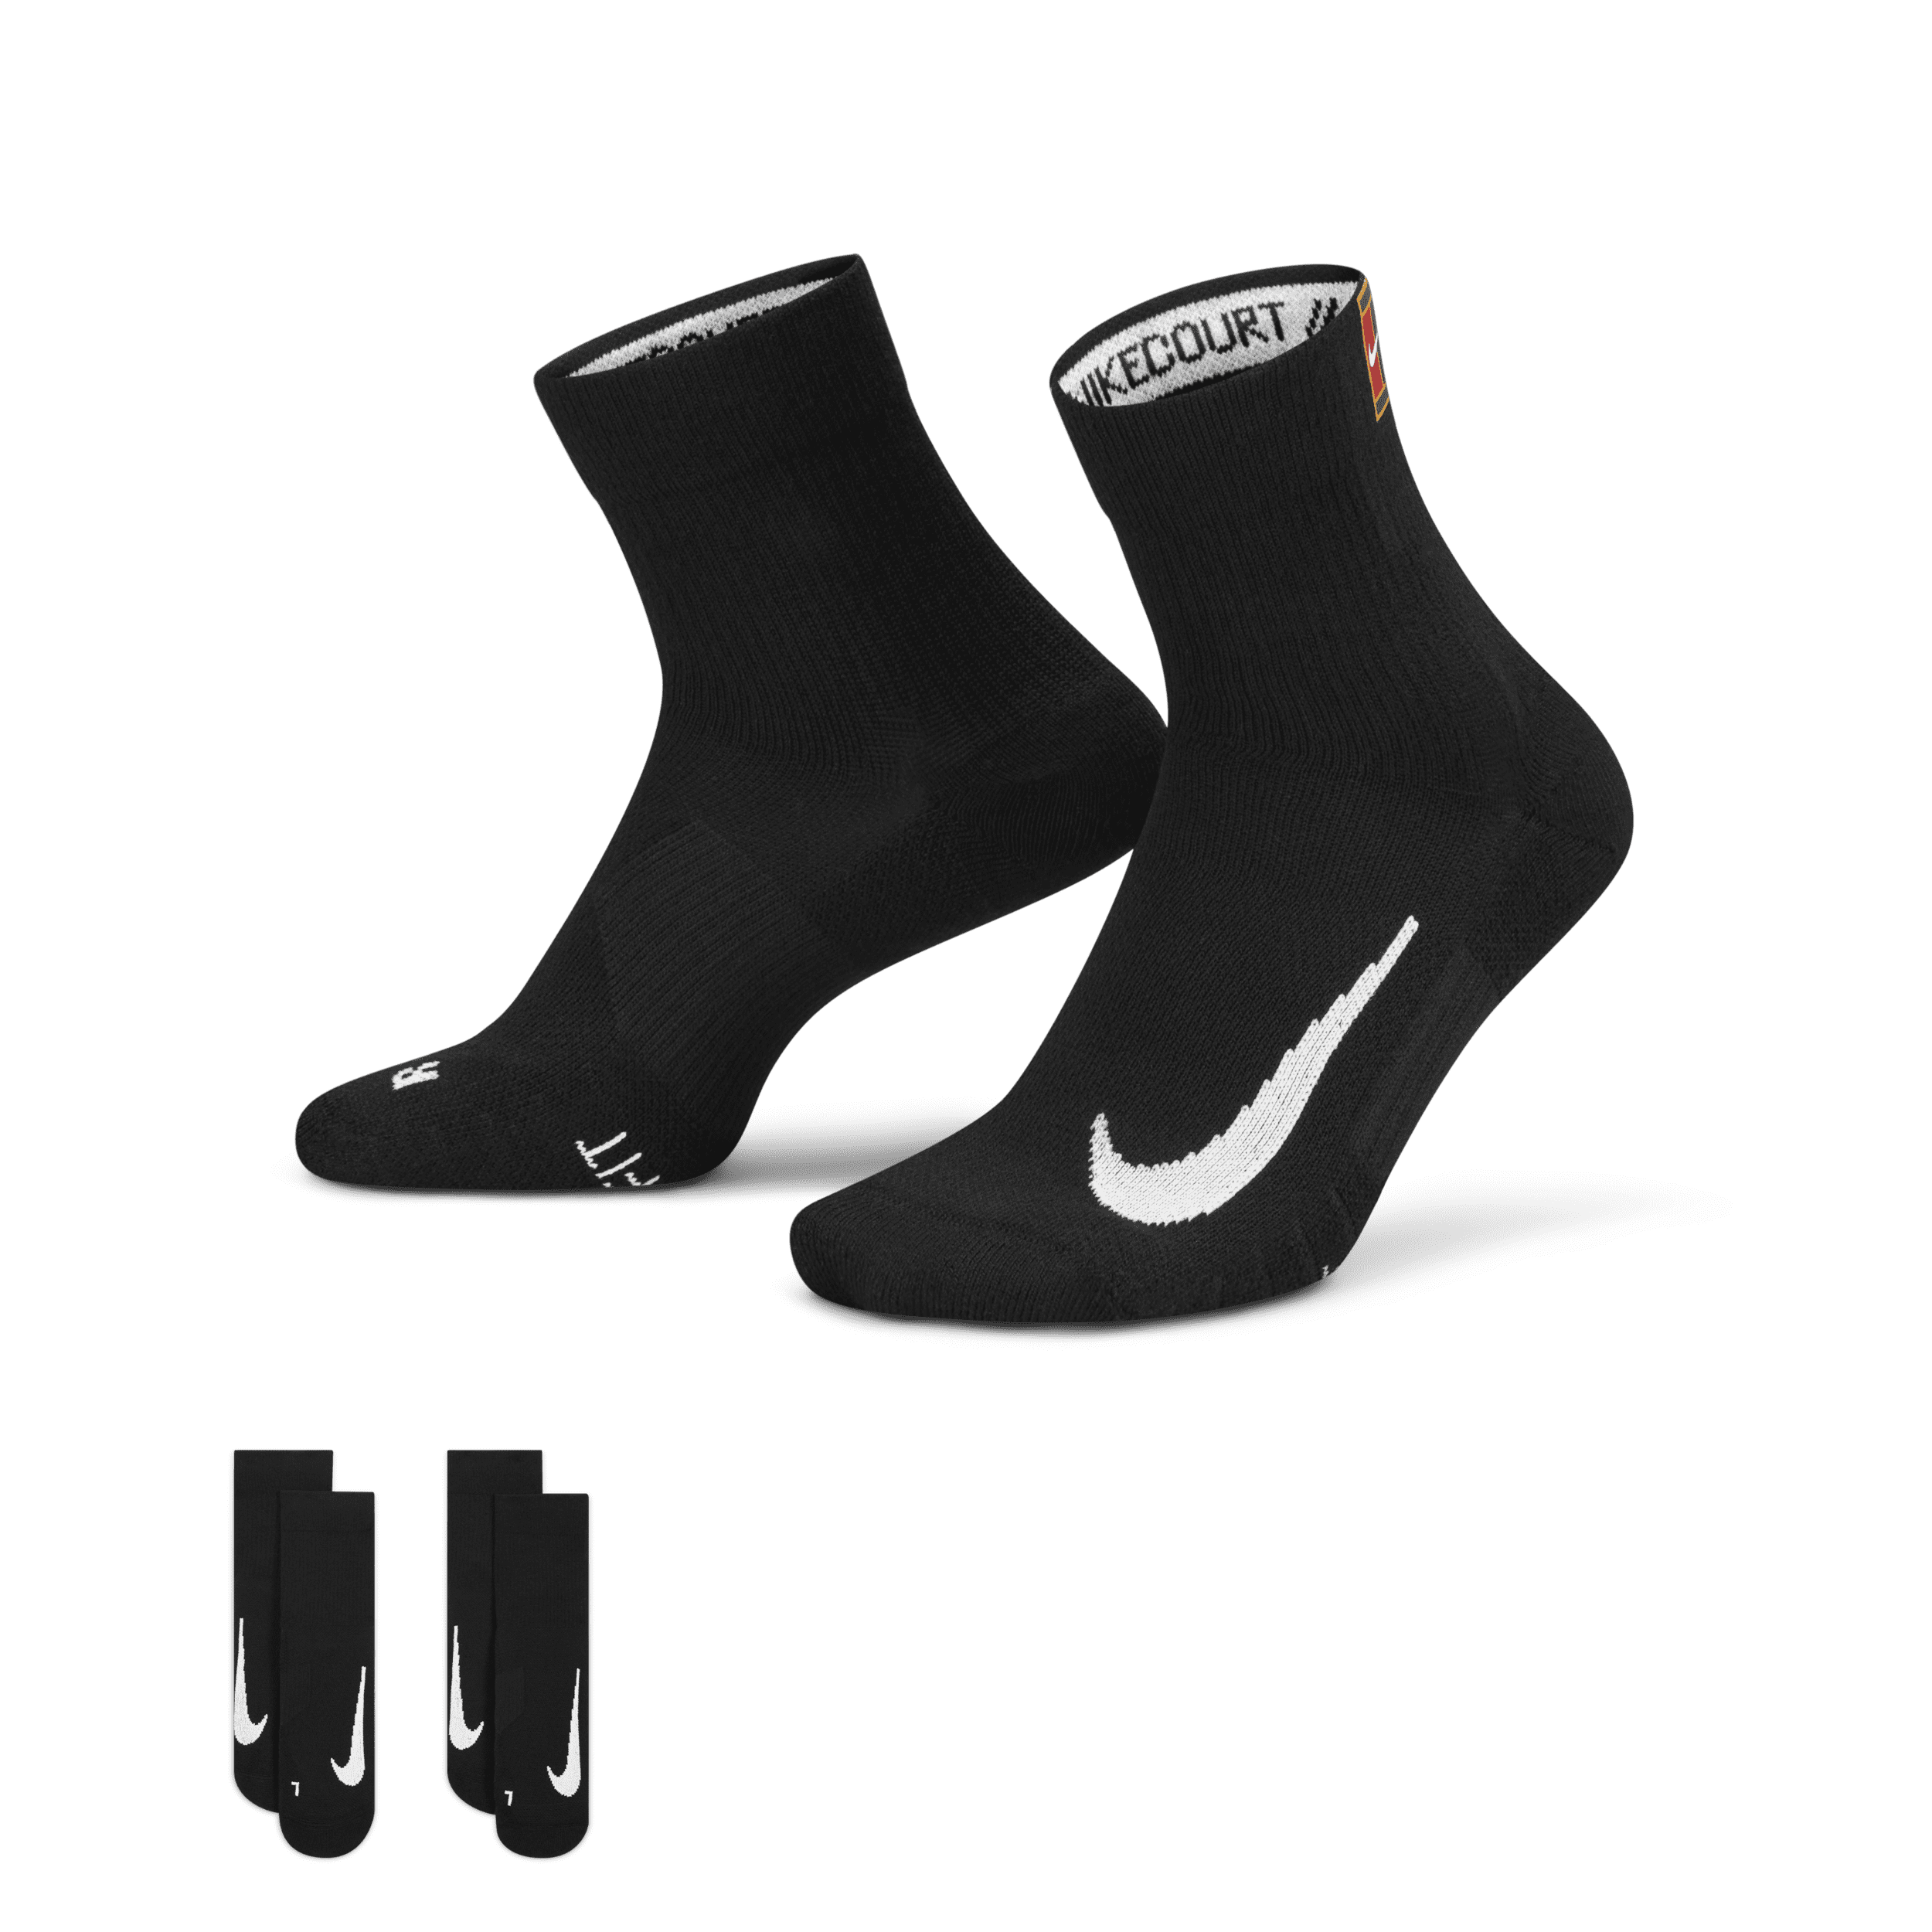 NikeCourt Multiplier Max Enkelsokken voor tennis (2 paar) - Zwart